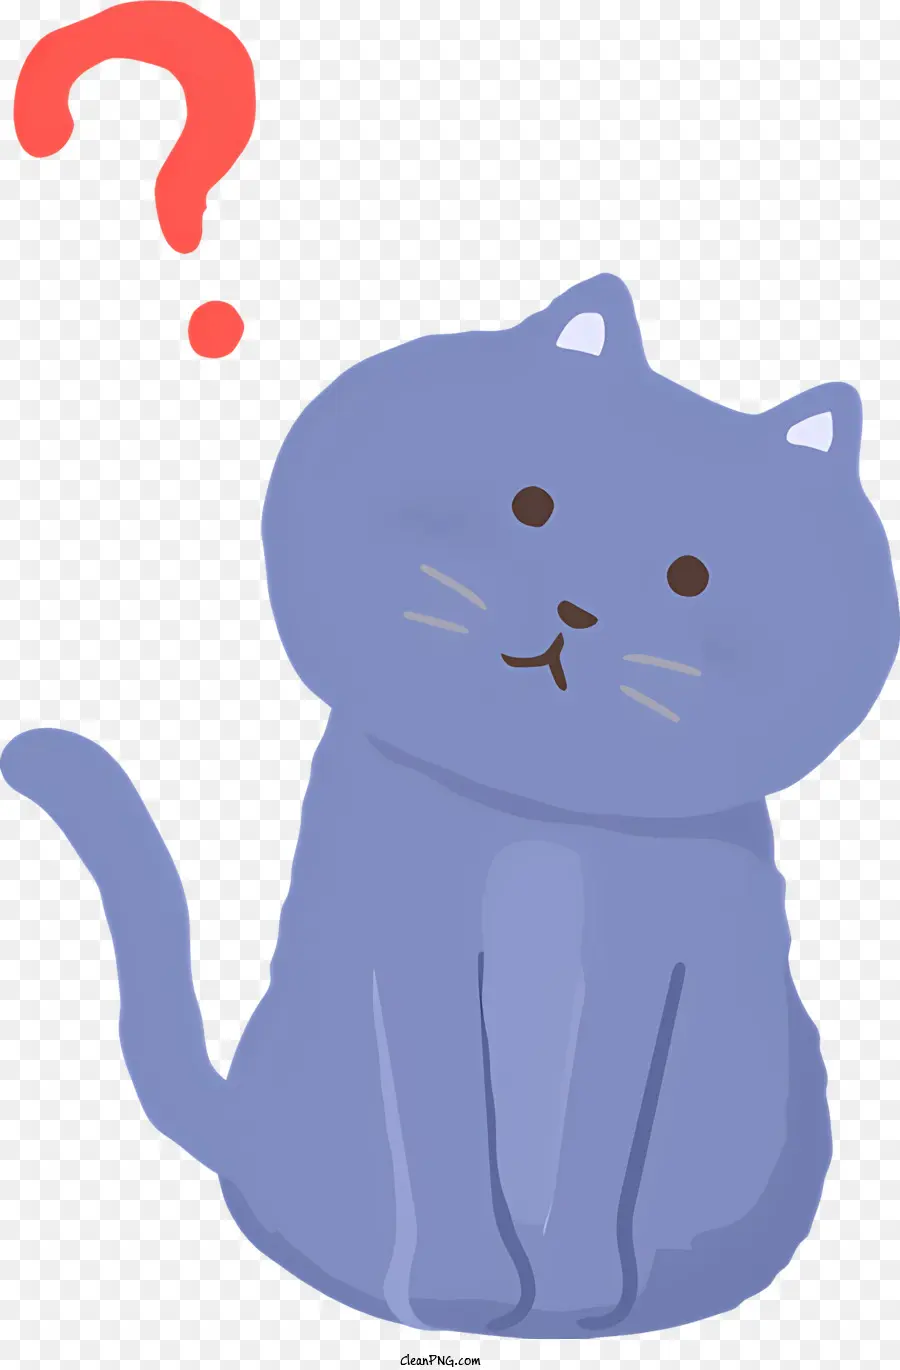 Fragezeichen - Blaue Katze mit Fragezeichen, Kragen, glattes Fell